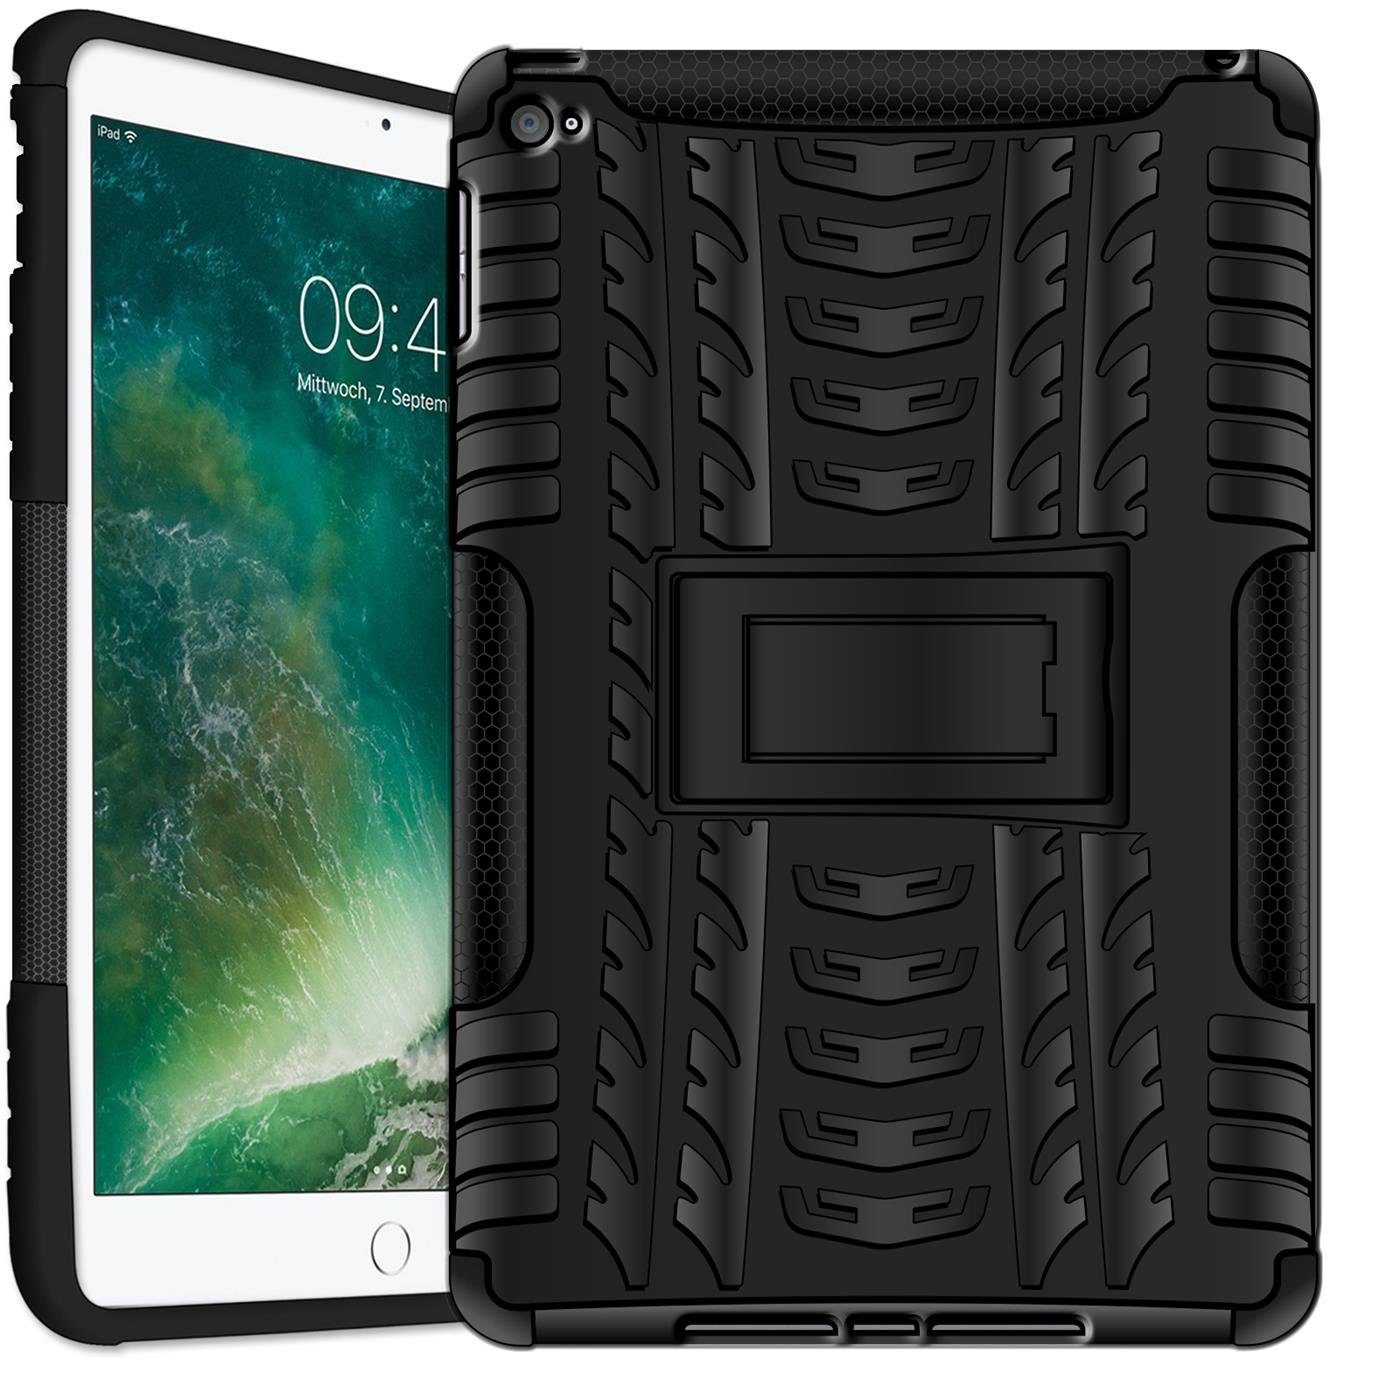 CoolGadget Tablet-Hülle Hybrid Outdoor Hülle für Apple iPad Mini 4 7,9 Zoll,  Hülle massiv Outdoor Schutzhülle für iPad Mini 4 Tablet Case